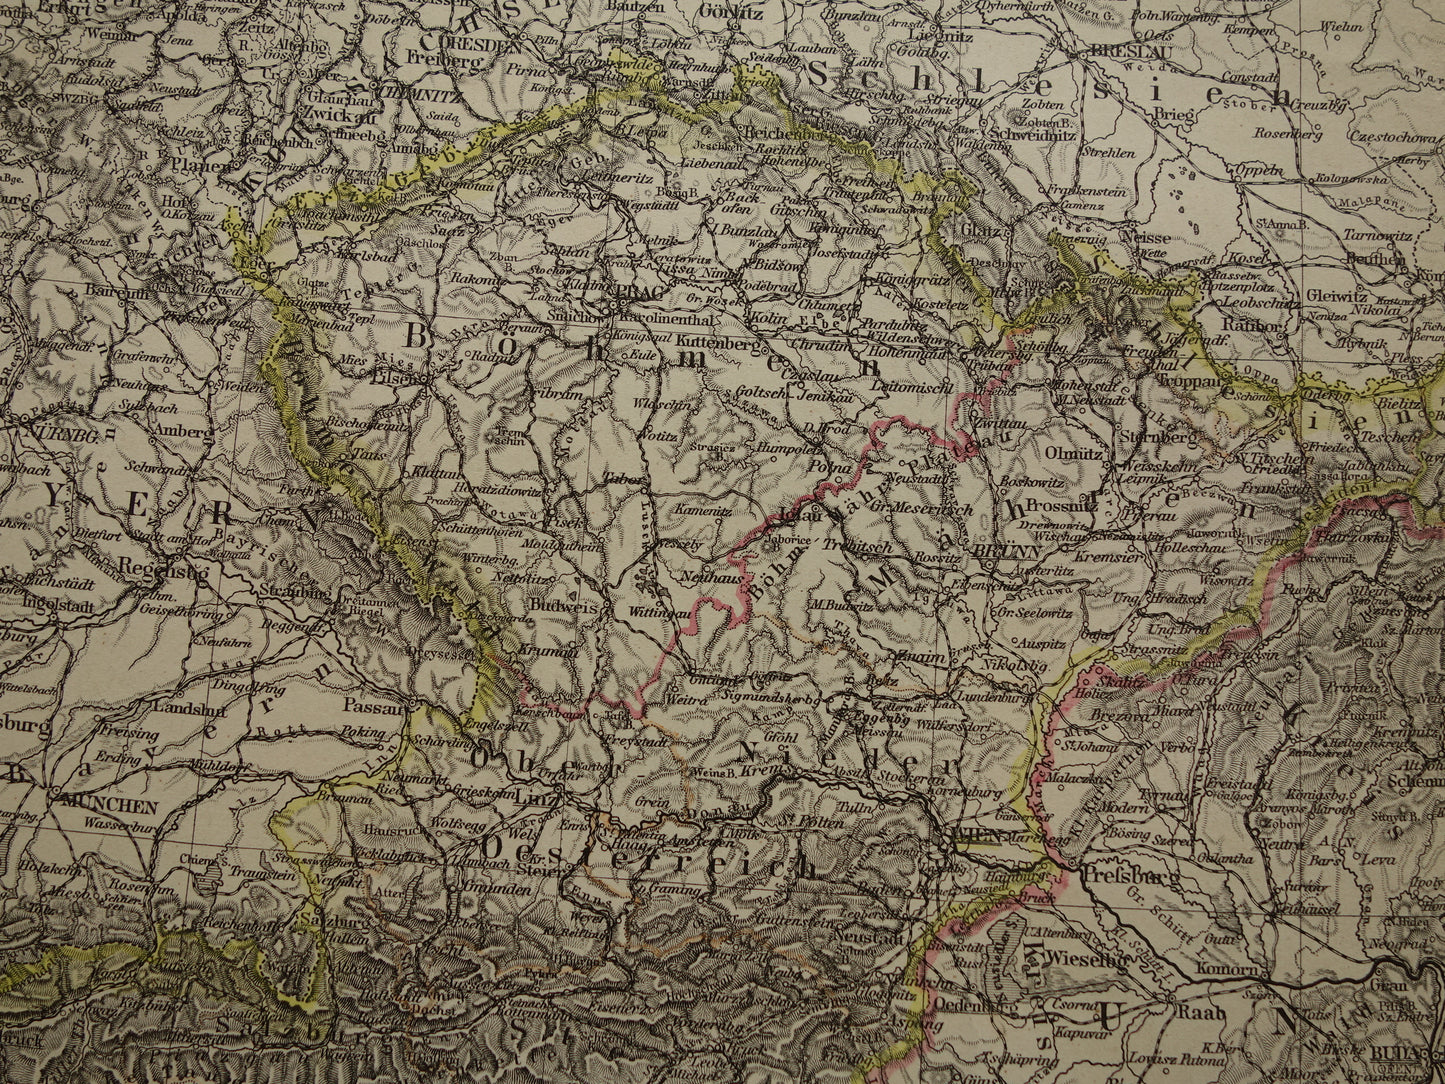 Oude kaart van Oostenrijk Hongarije uit het jaar 1886 gedetailleerde antieke landkaart met jaartal historische kaarten Oostenrijk-Hongarije